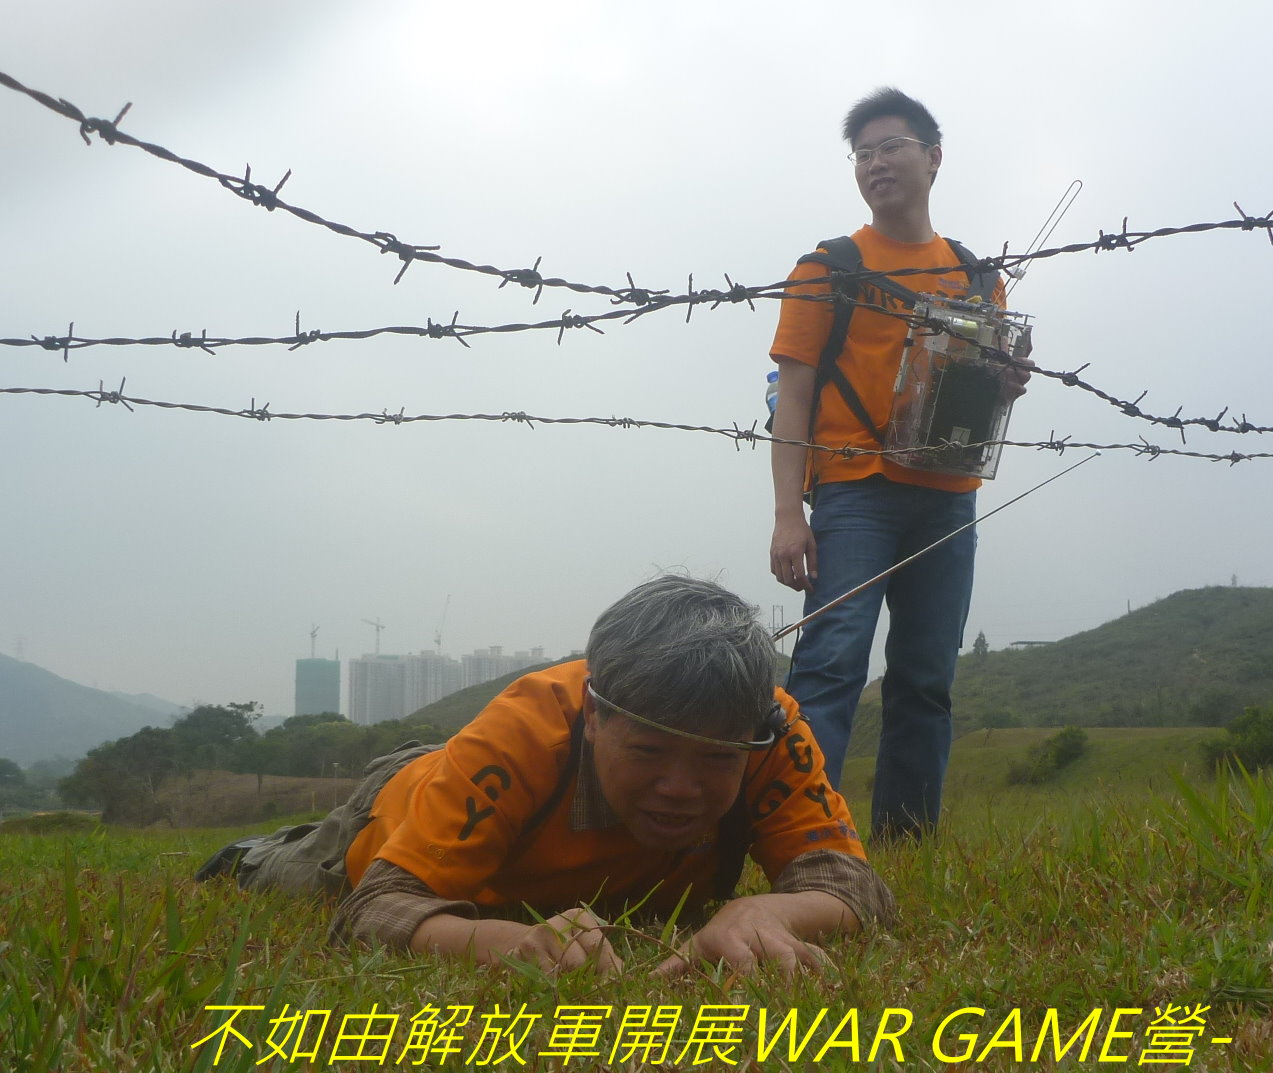 051 不如由解放軍開展WAR GAME營------.jpg